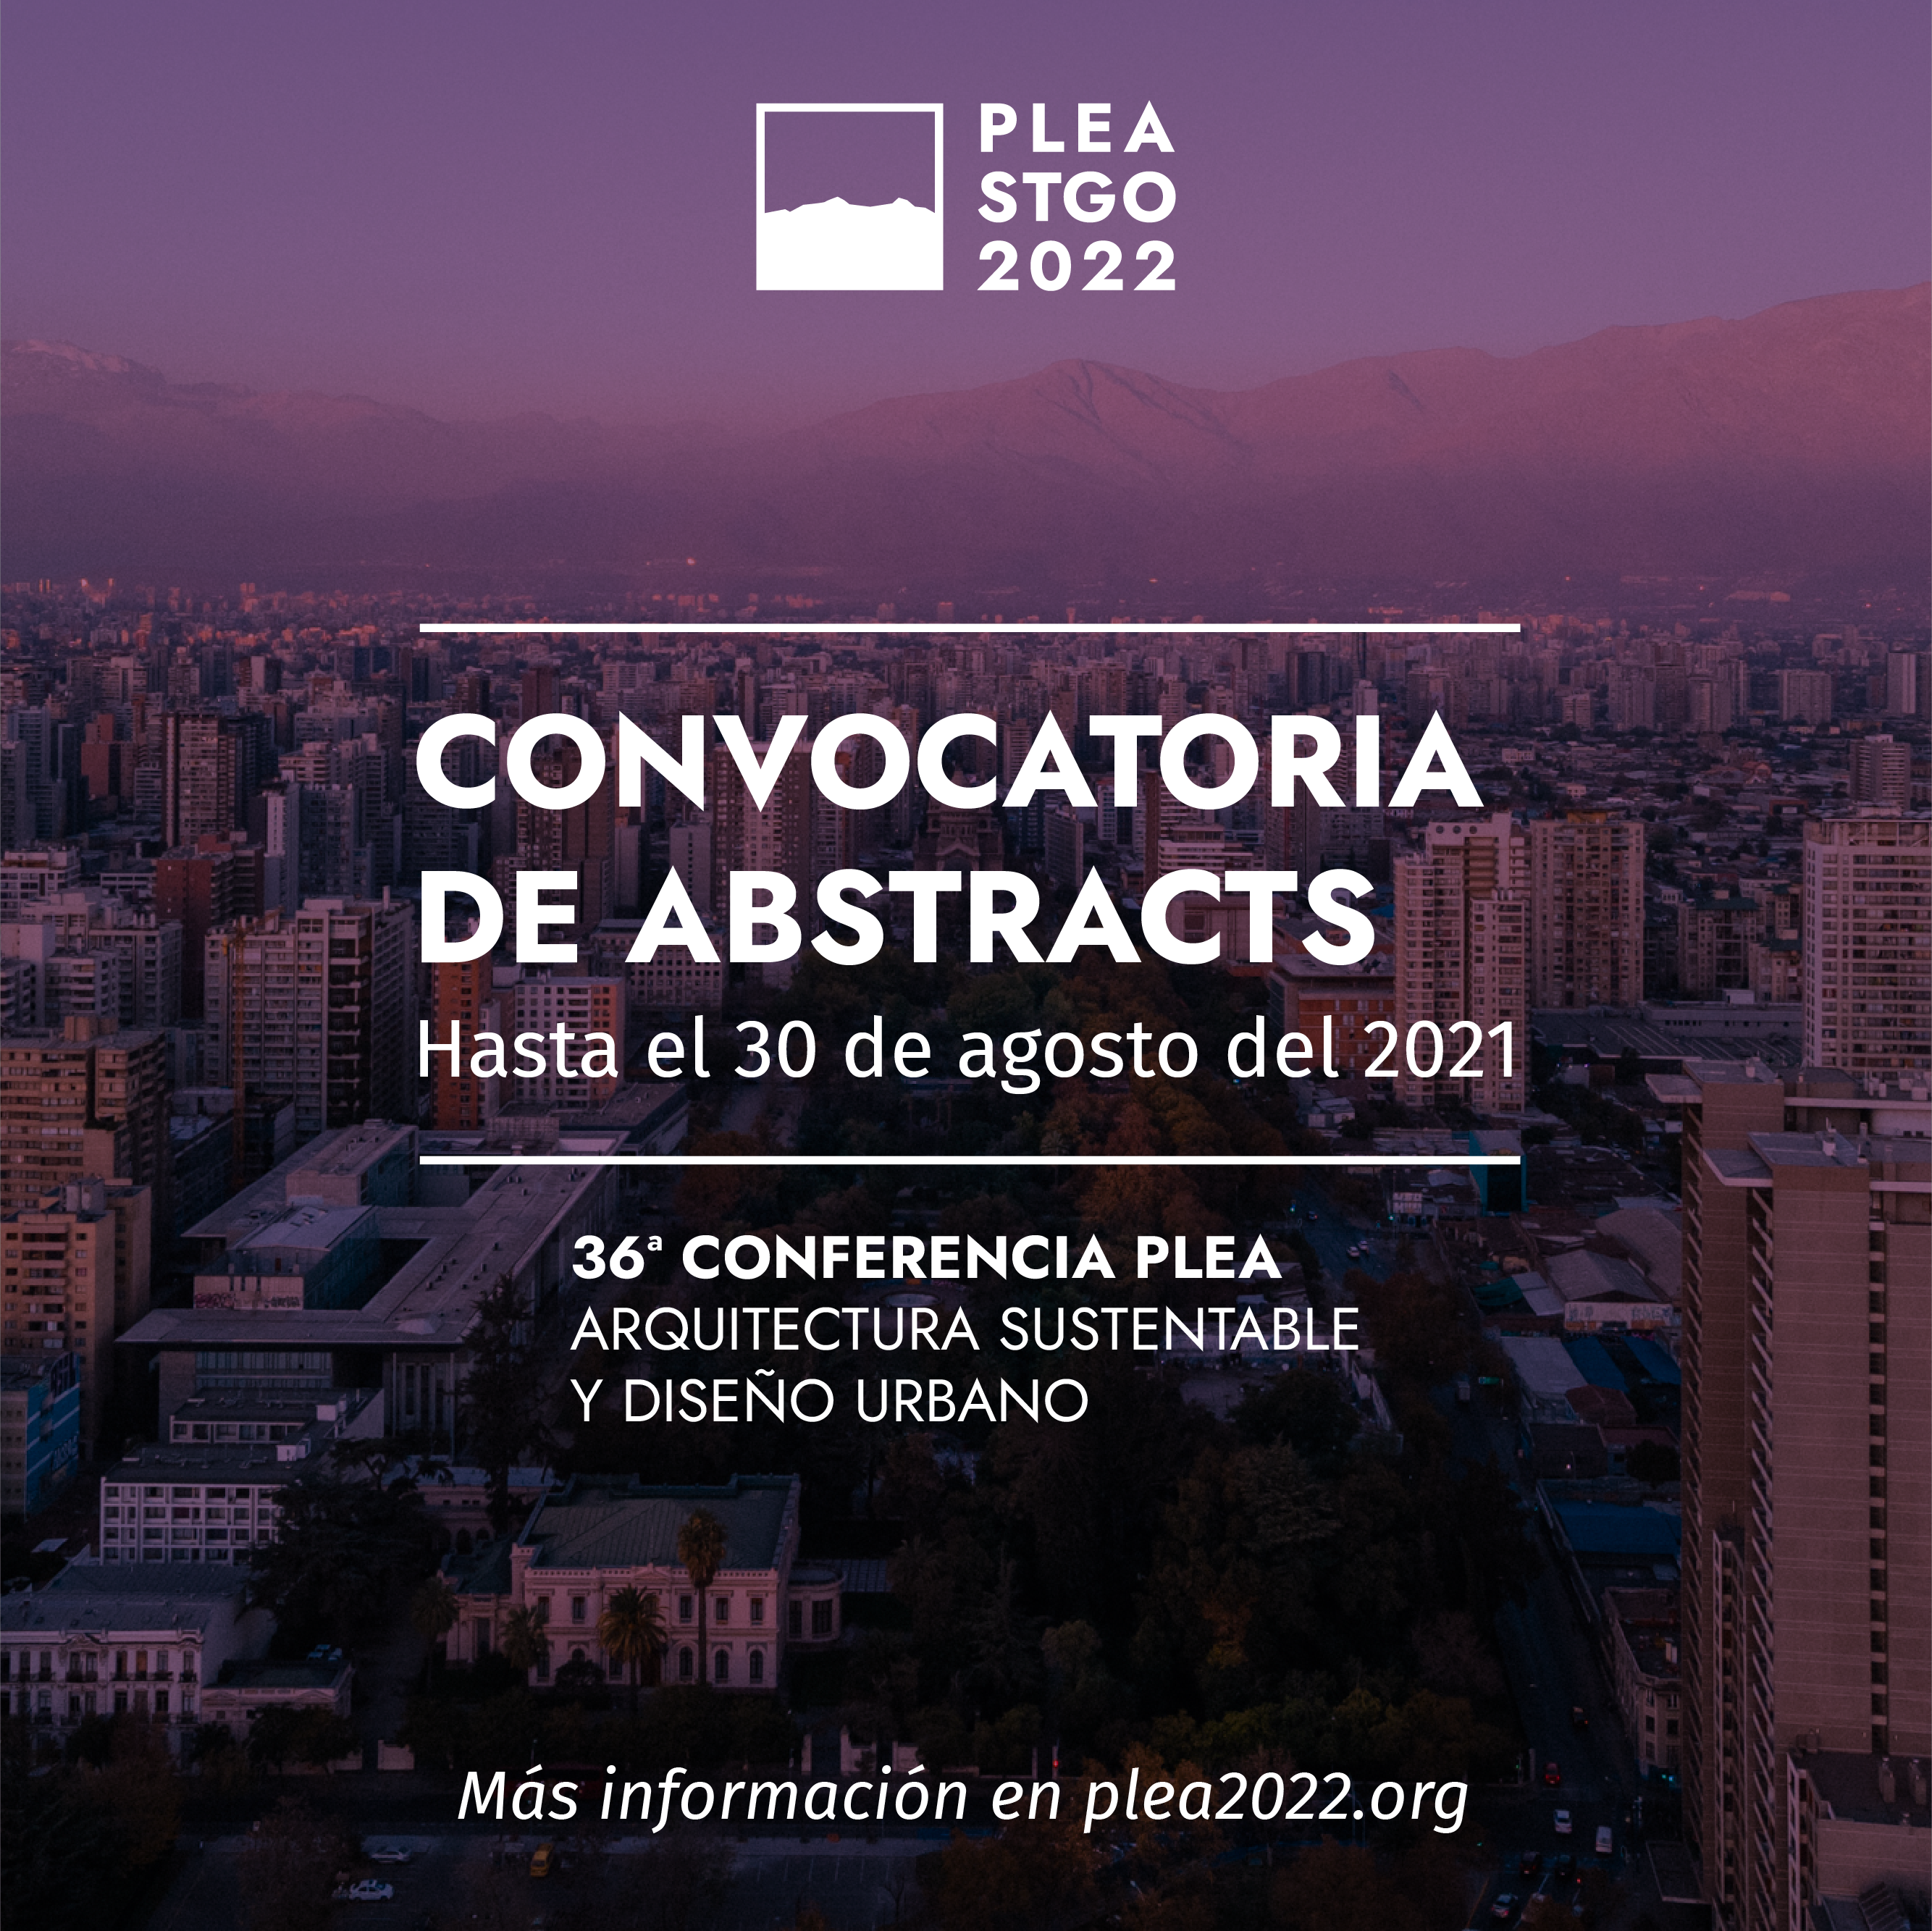 36ª Conferencia PLEA / Convocatoria de Abstract